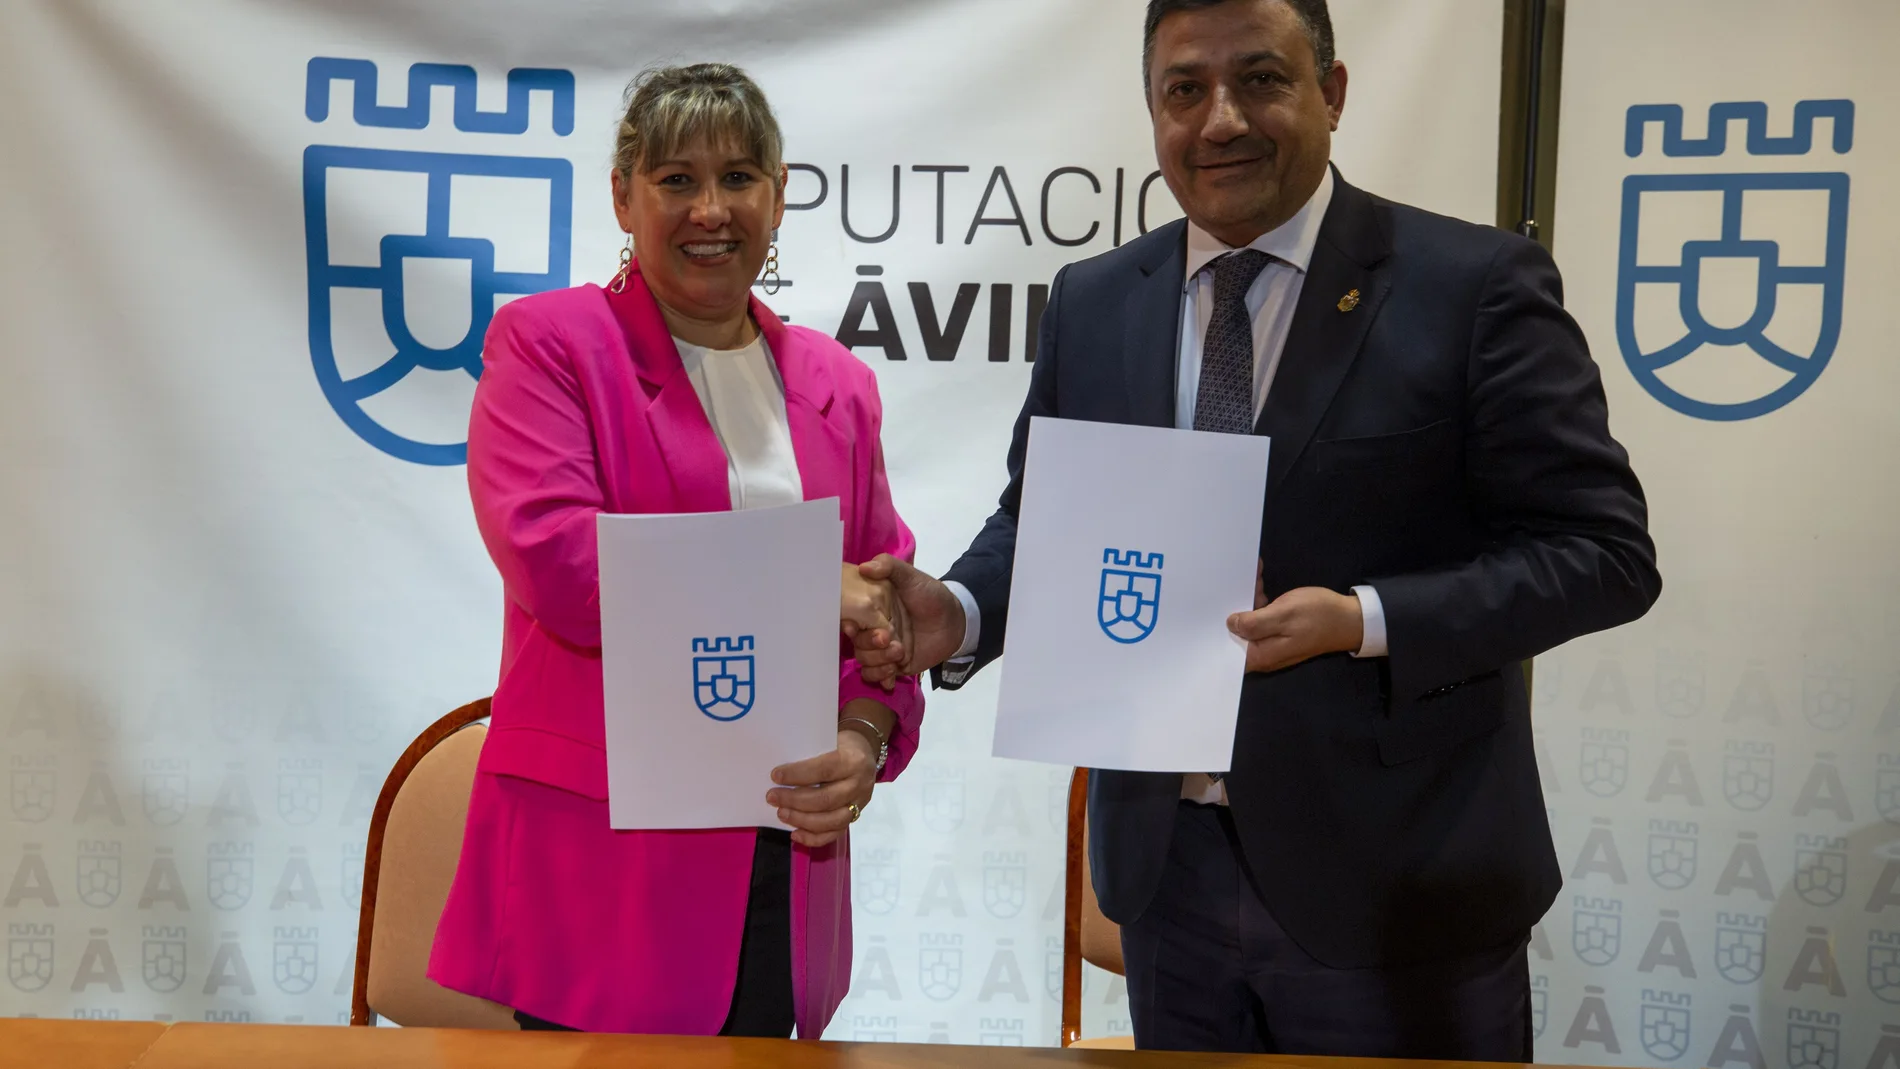 El presidente de la Diputación de Ávila, Carlos García, firma el acuerdo con Inmaculada Pose, directora de Faema